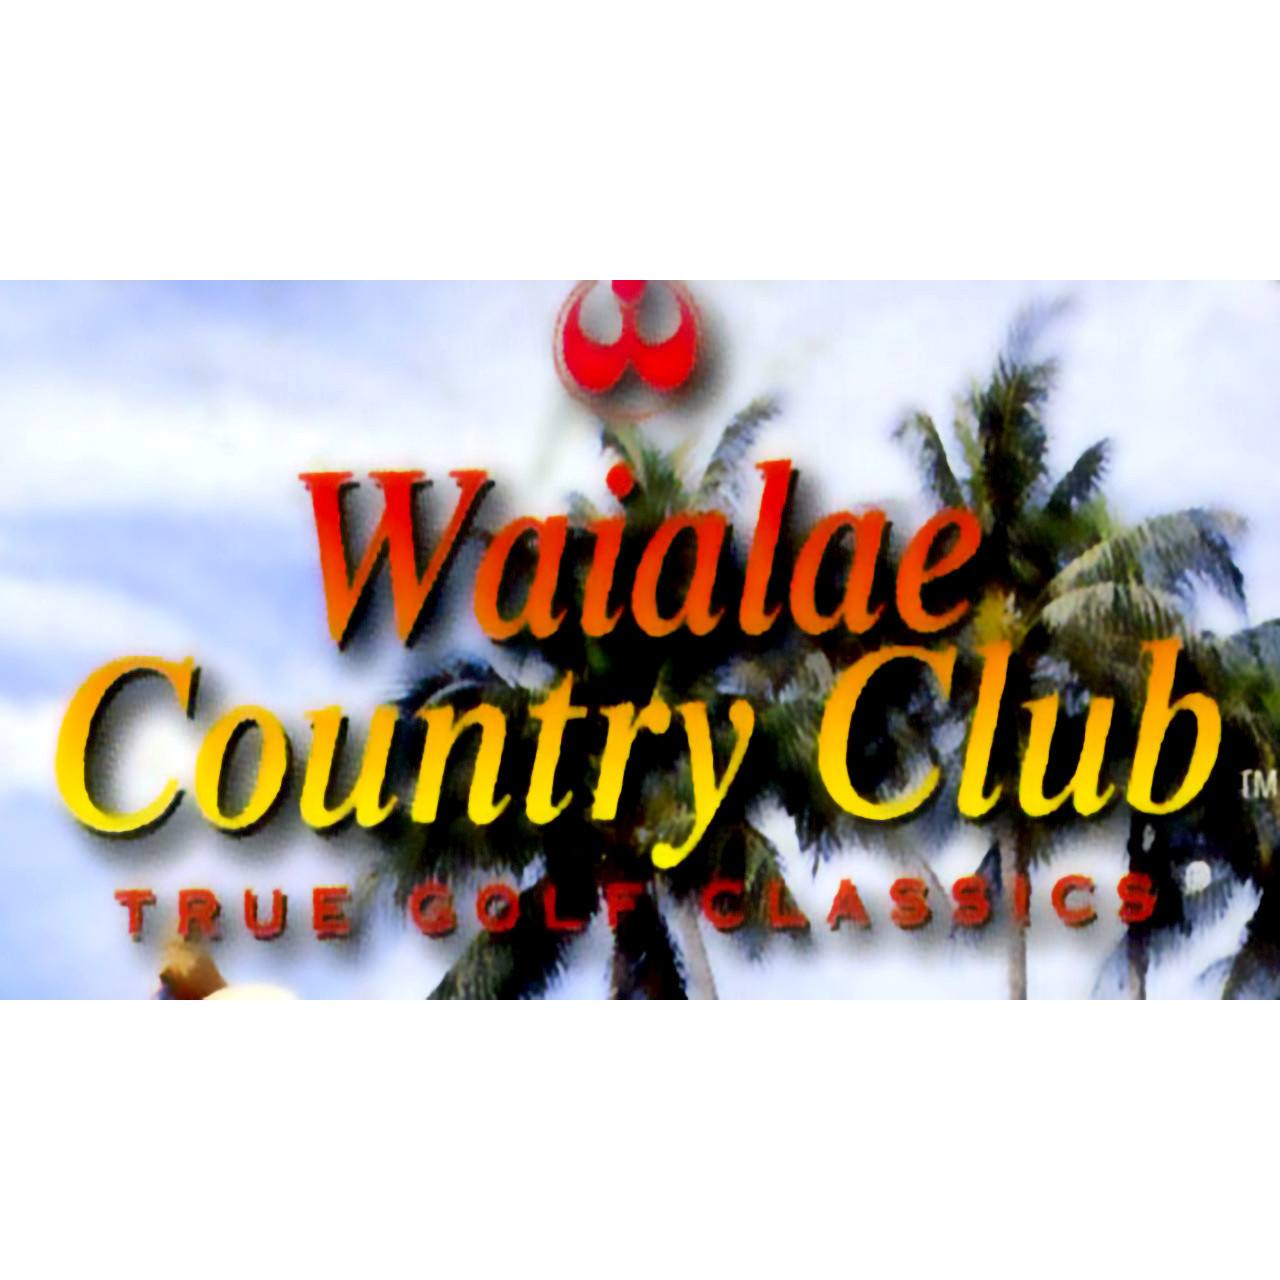 Waialae Country Club: True Golf Classics